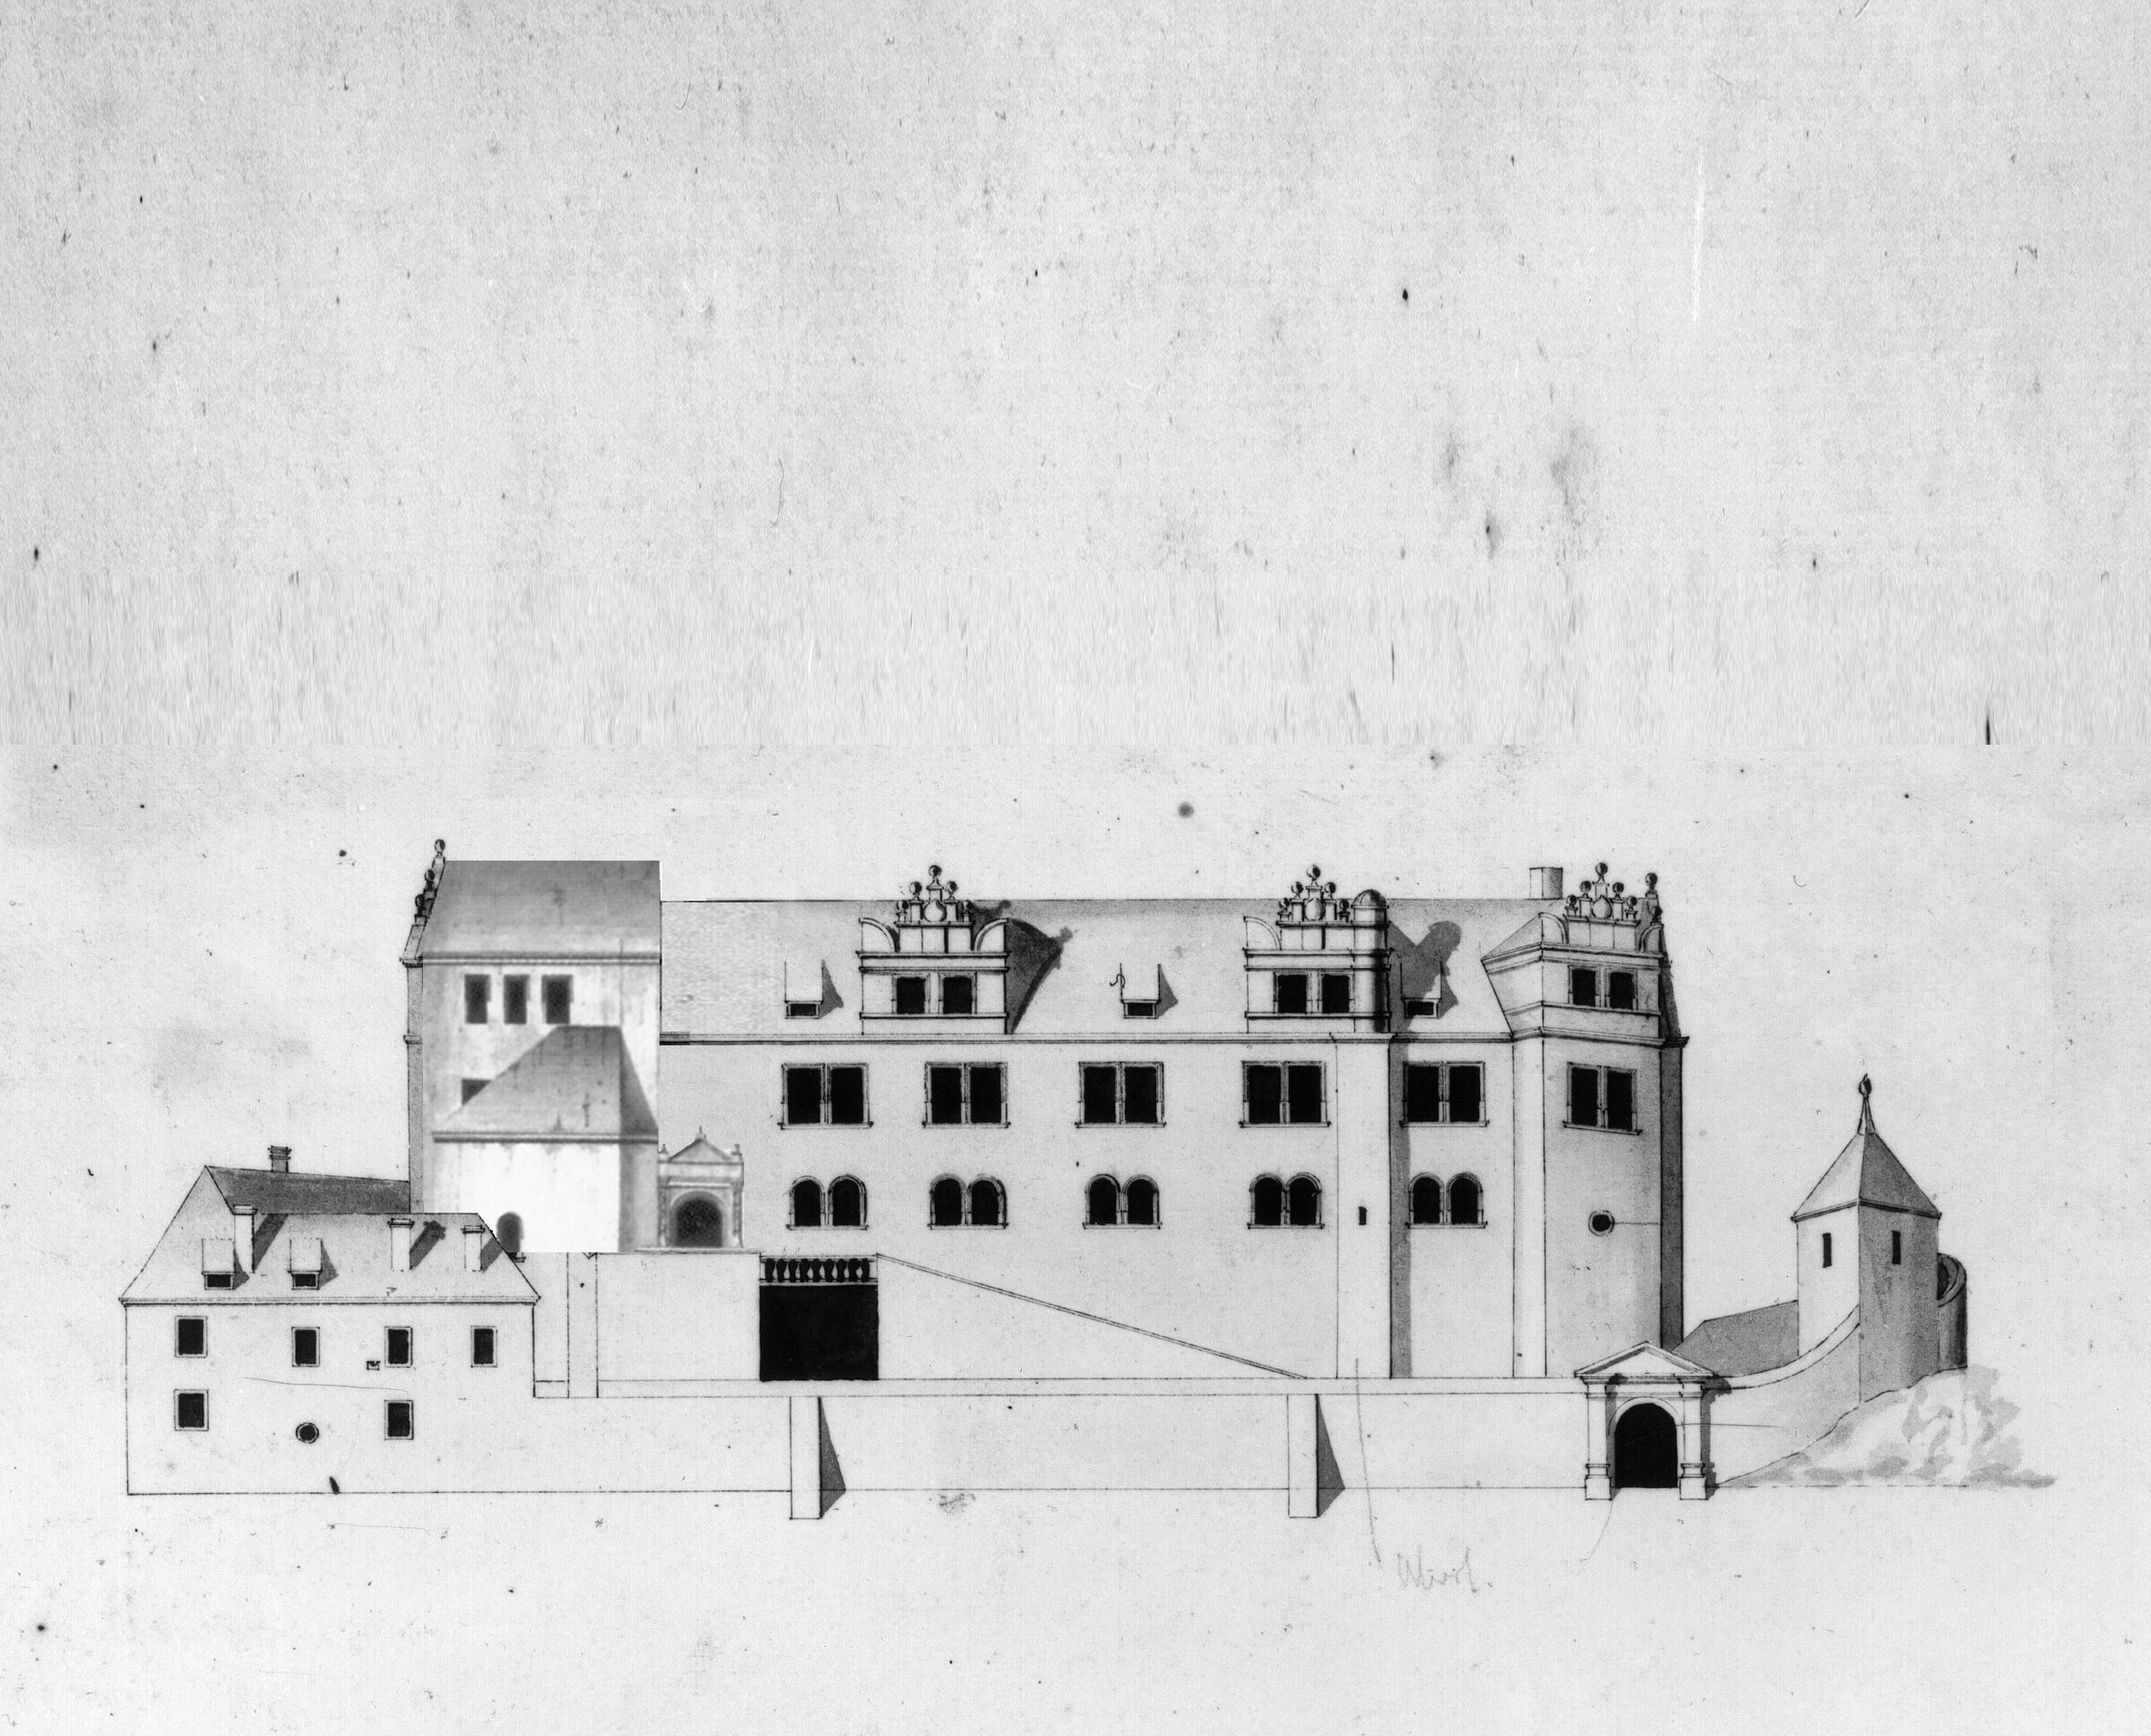 Plan mit der Ansicht der Fassade vor dem Umbau 1772 mit Reitertreppe, Renaissancegiebeln und klarer Gliederung der Fensterfront